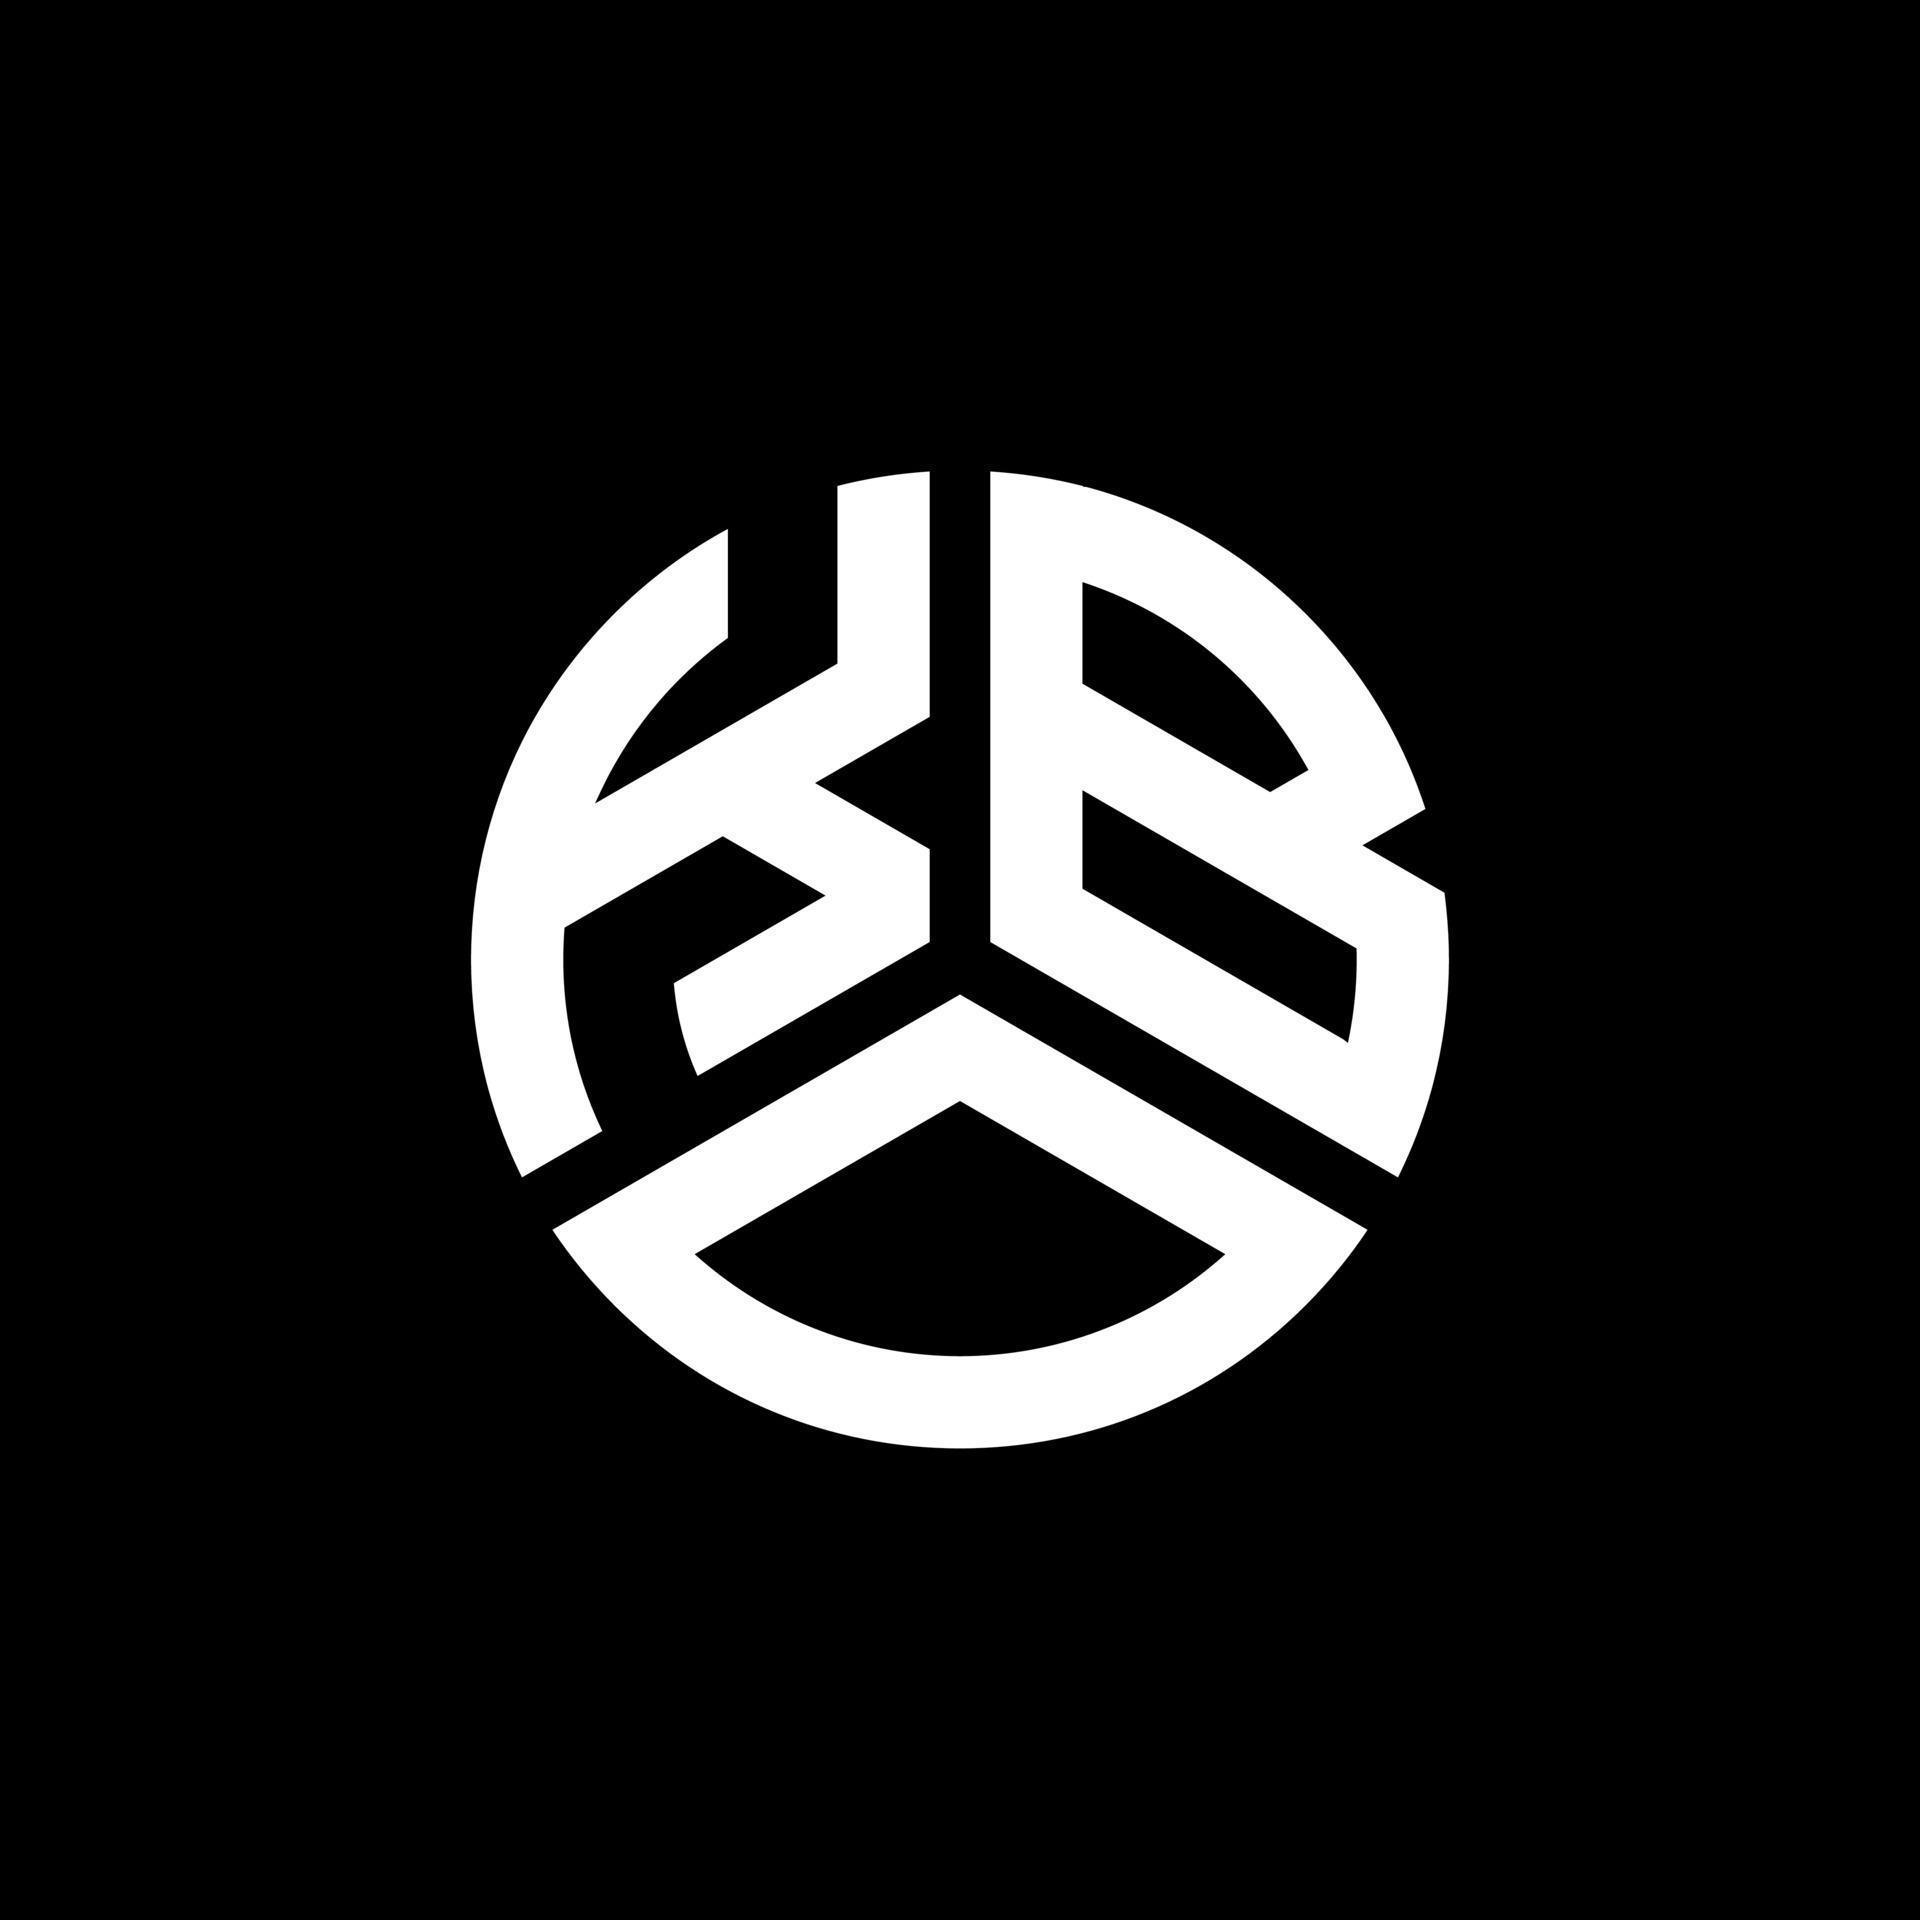 création de logo de lettre kbo sur fond noir. concept de logo de lettre initiales créatives kbo. conception de lettre kbo. vecteur